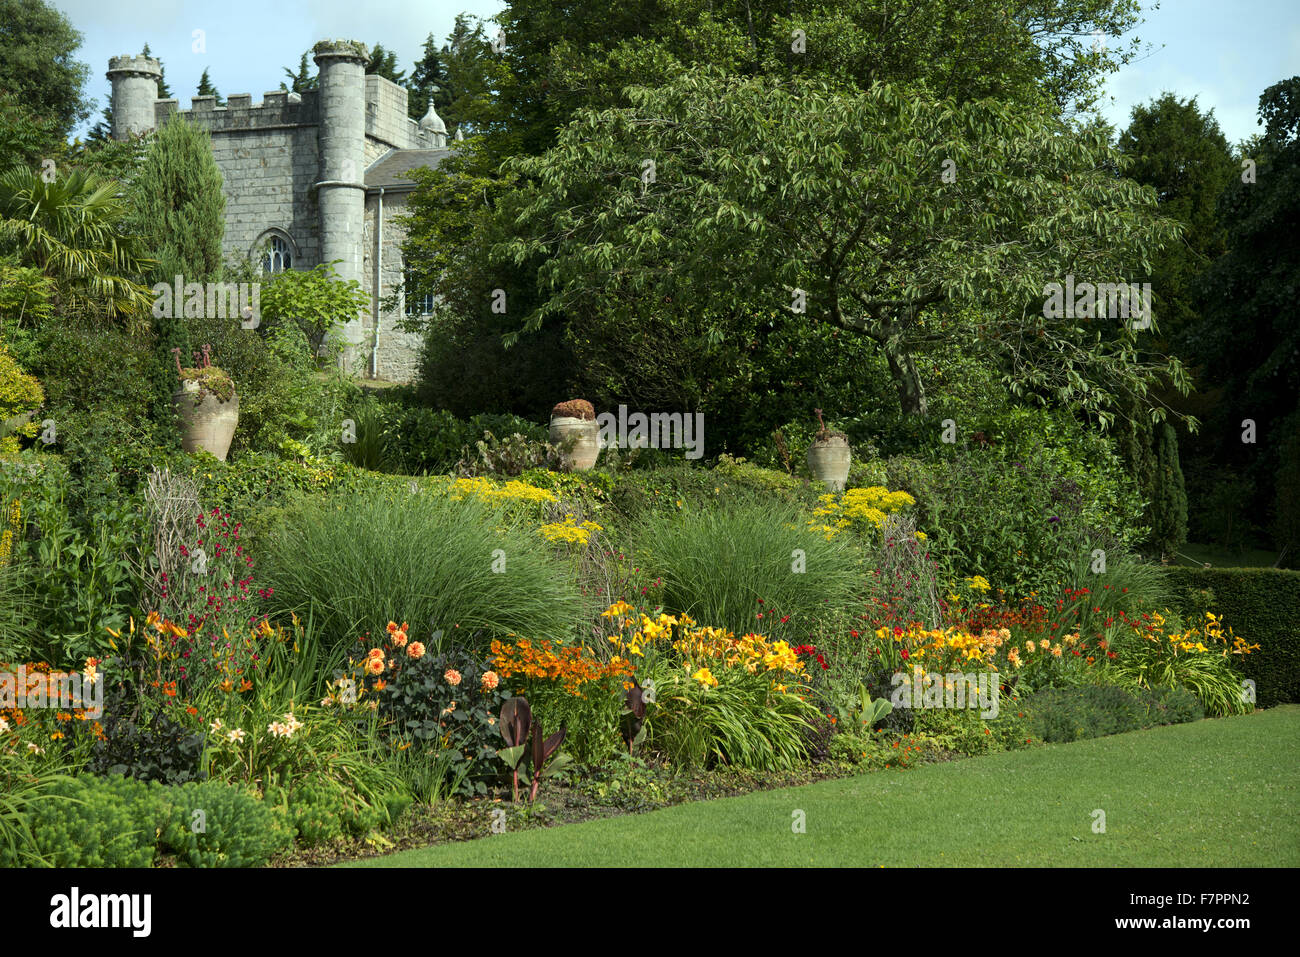 La casa vista dal giardino di Plas Newydd Country House e giardini, Anglesey, Galles. Questo bel palazzo del XVIII secolo si trova sulle rive del Menai Strait con viste mozzafiato di Snowdonia. Foto Stock